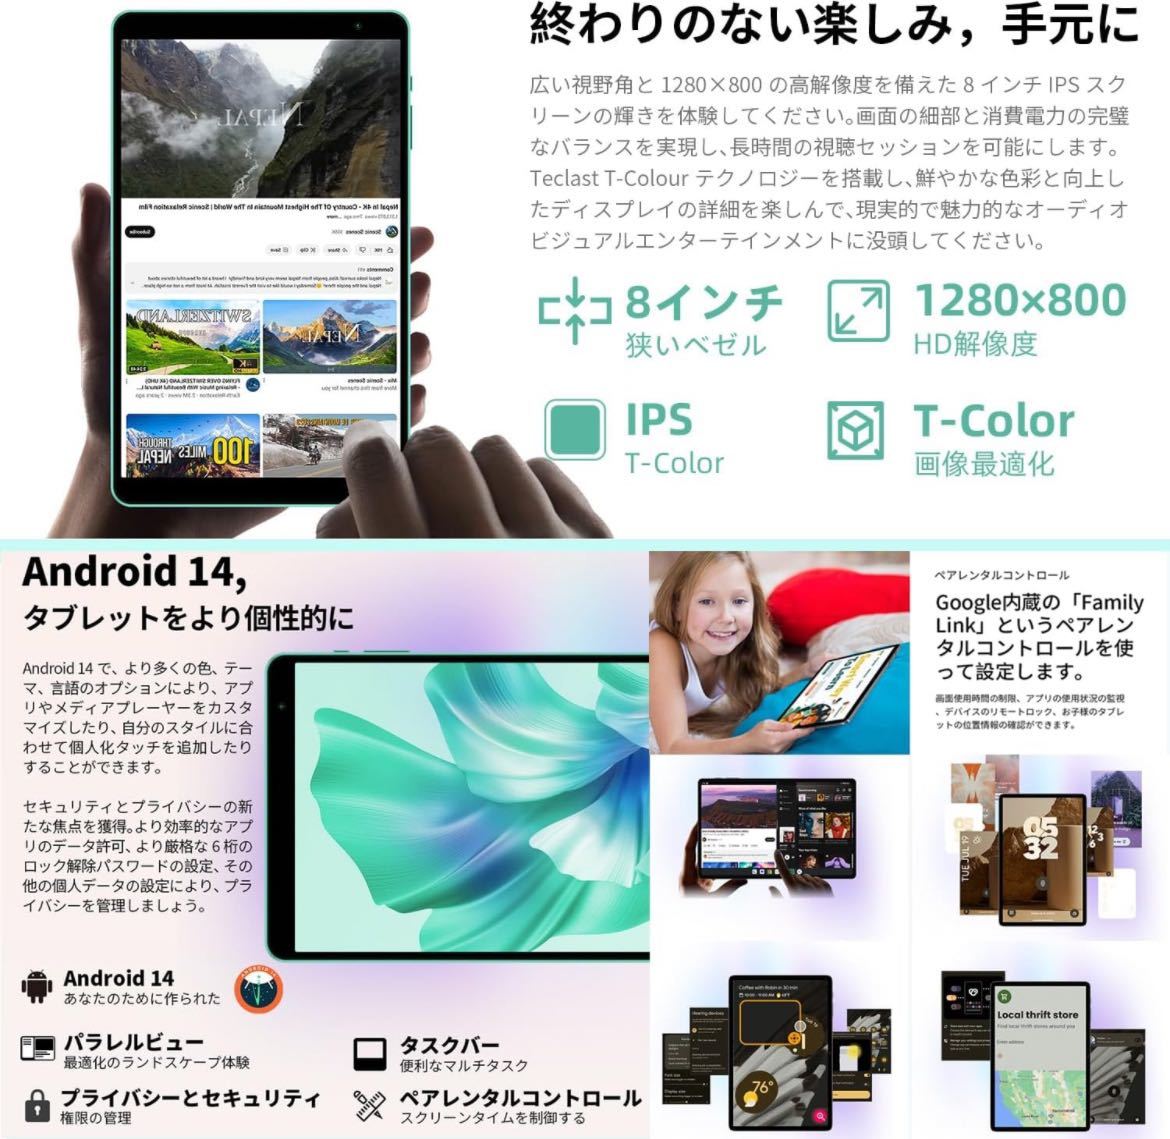 Android 14 タブレット 8インチ新登場wi-fiモデル10GB+64GB+1TB TF拡張_画像3